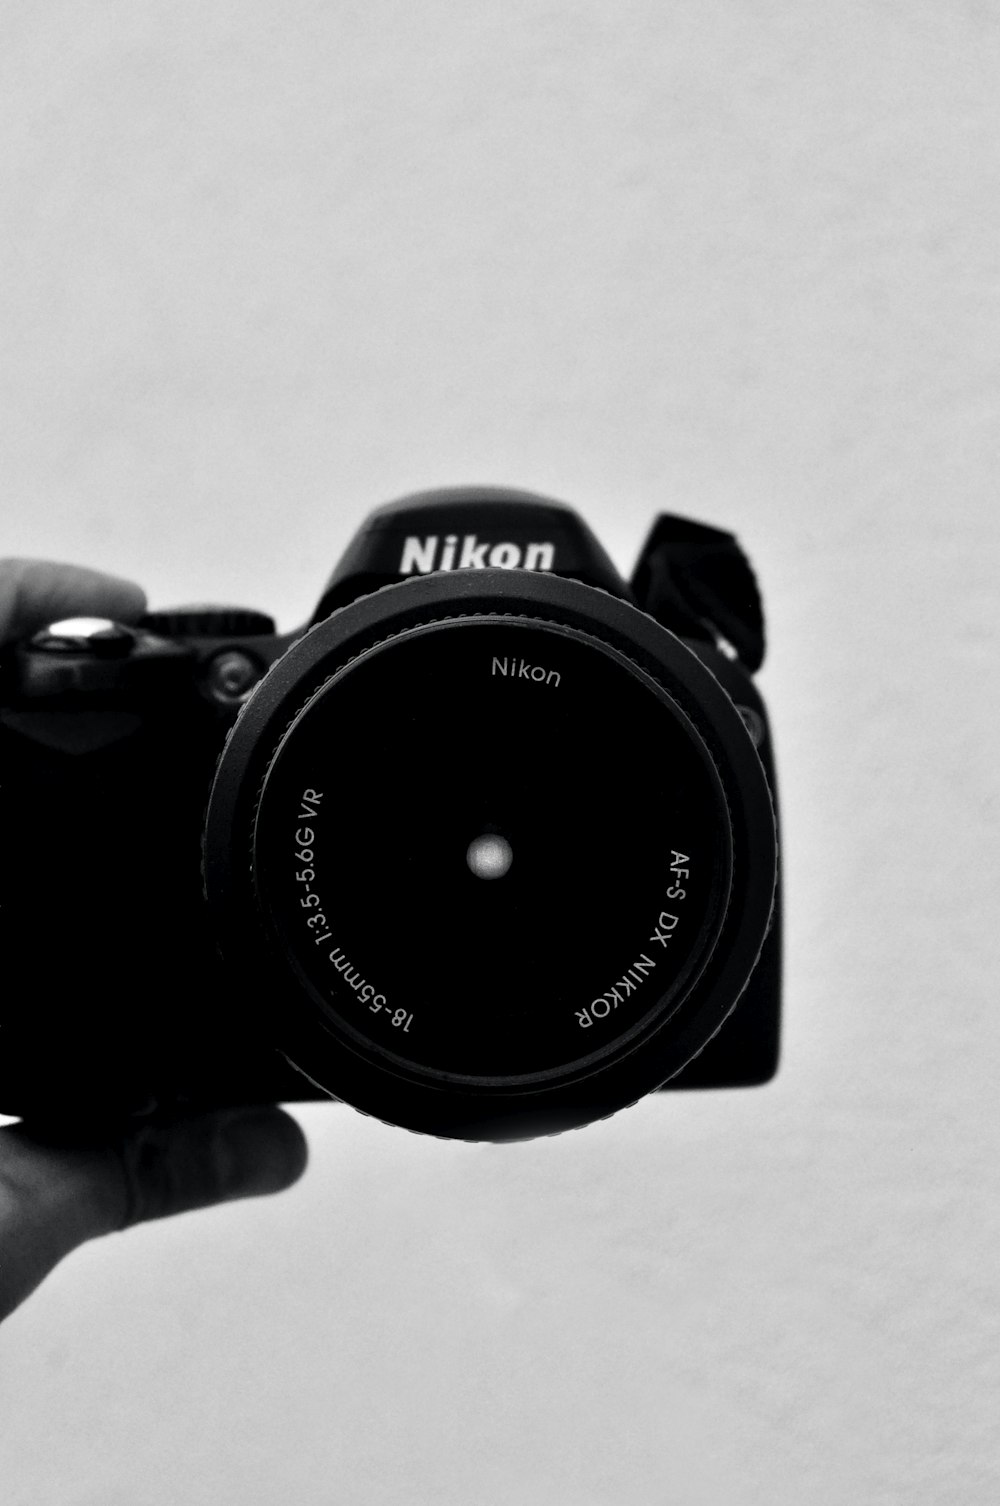 black nikon dslr camera on white table